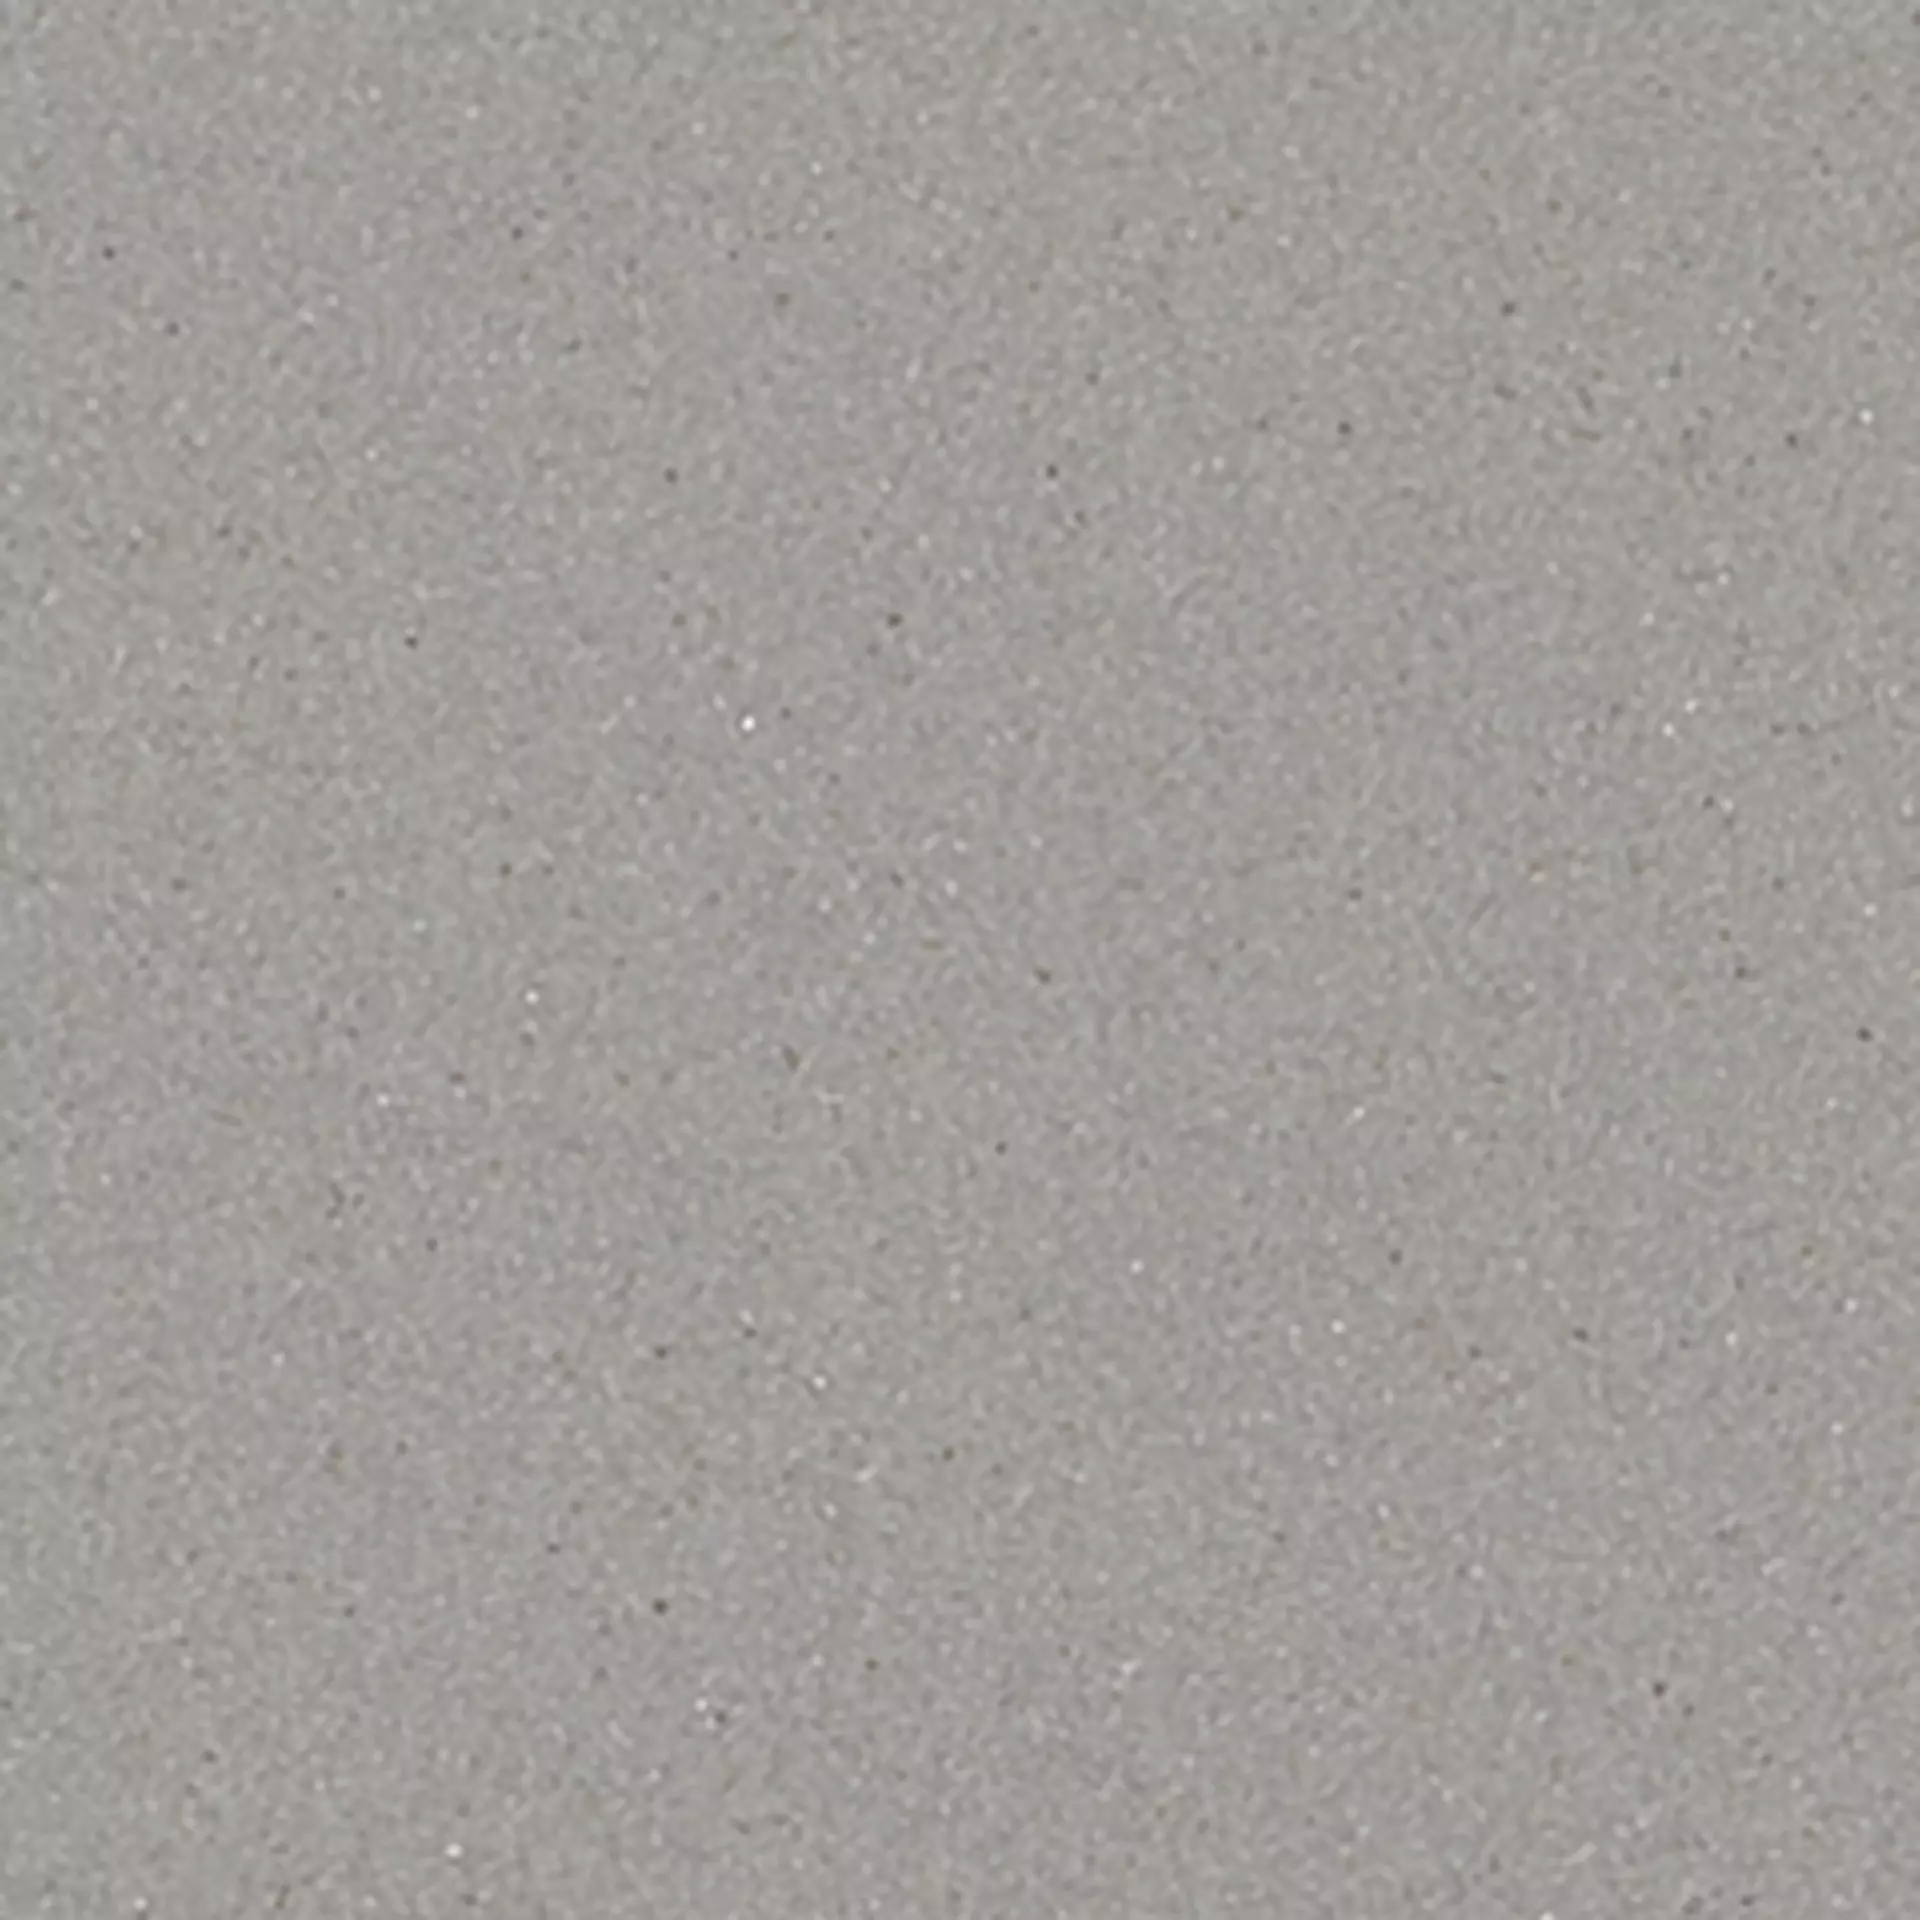 Bodenfliese,Wandfliese Marazzi Sistemt Cromie Cemento Naturale – Matt Cemento M7LR matt natur 30x30cm 8,5mm